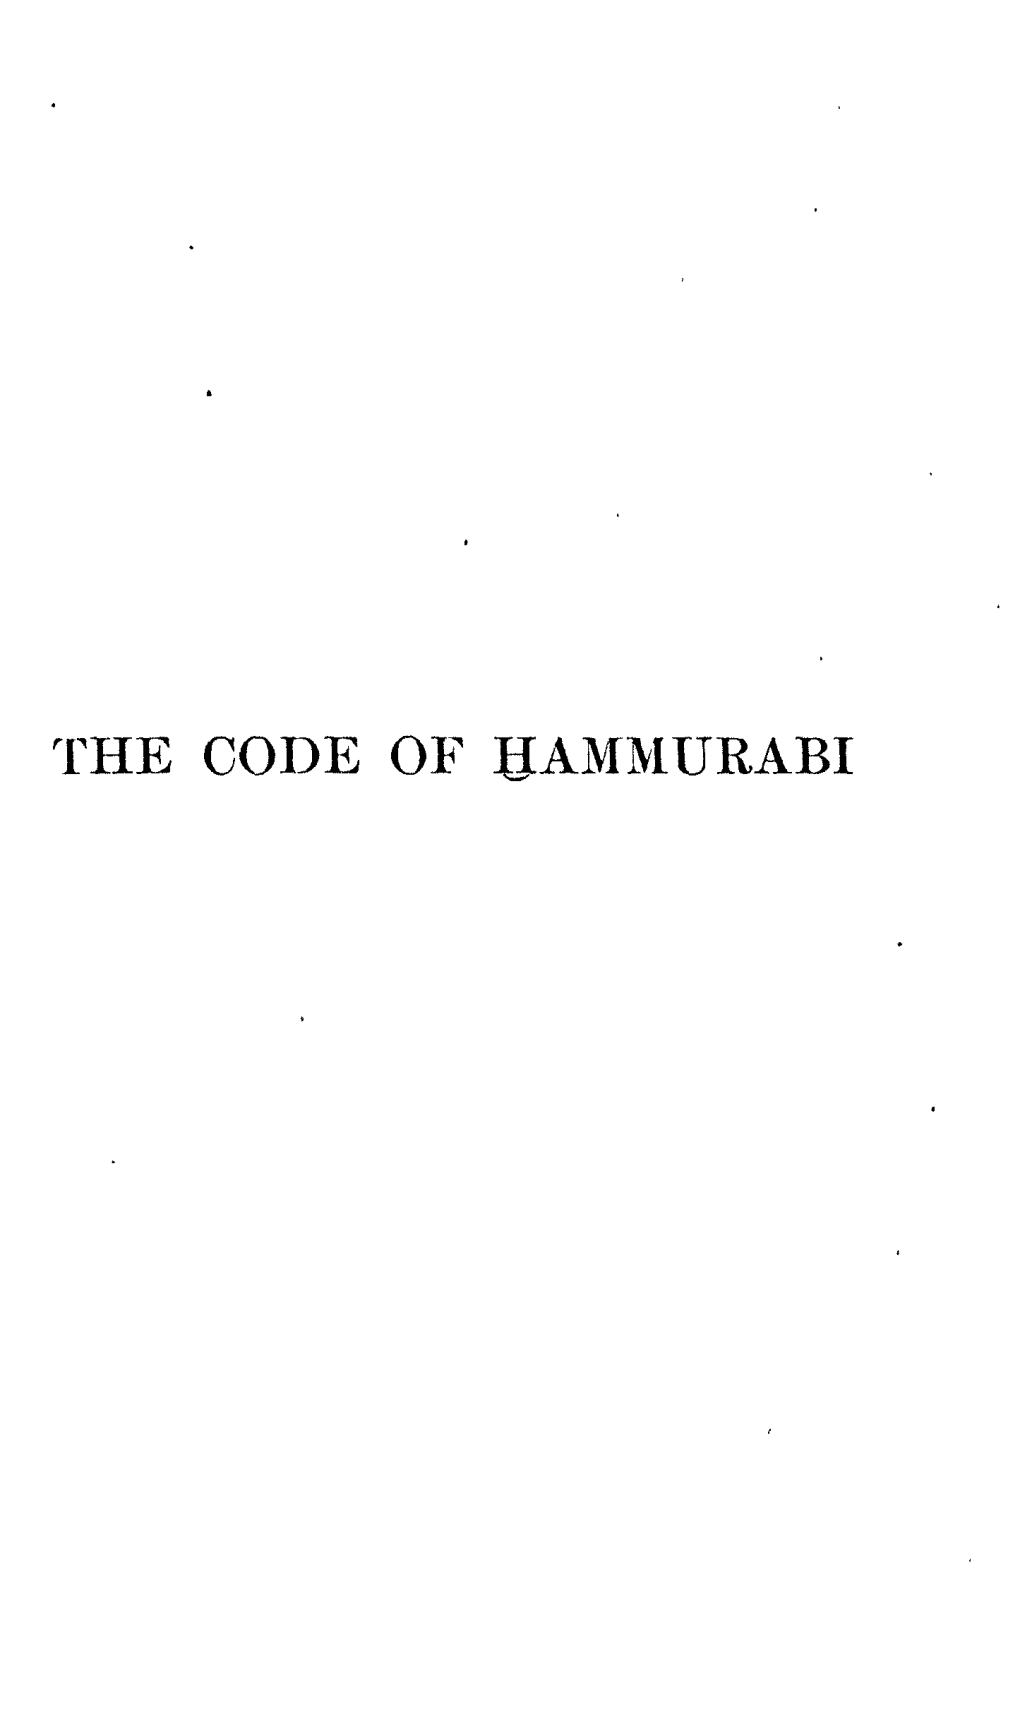 The Code of Uammurabi